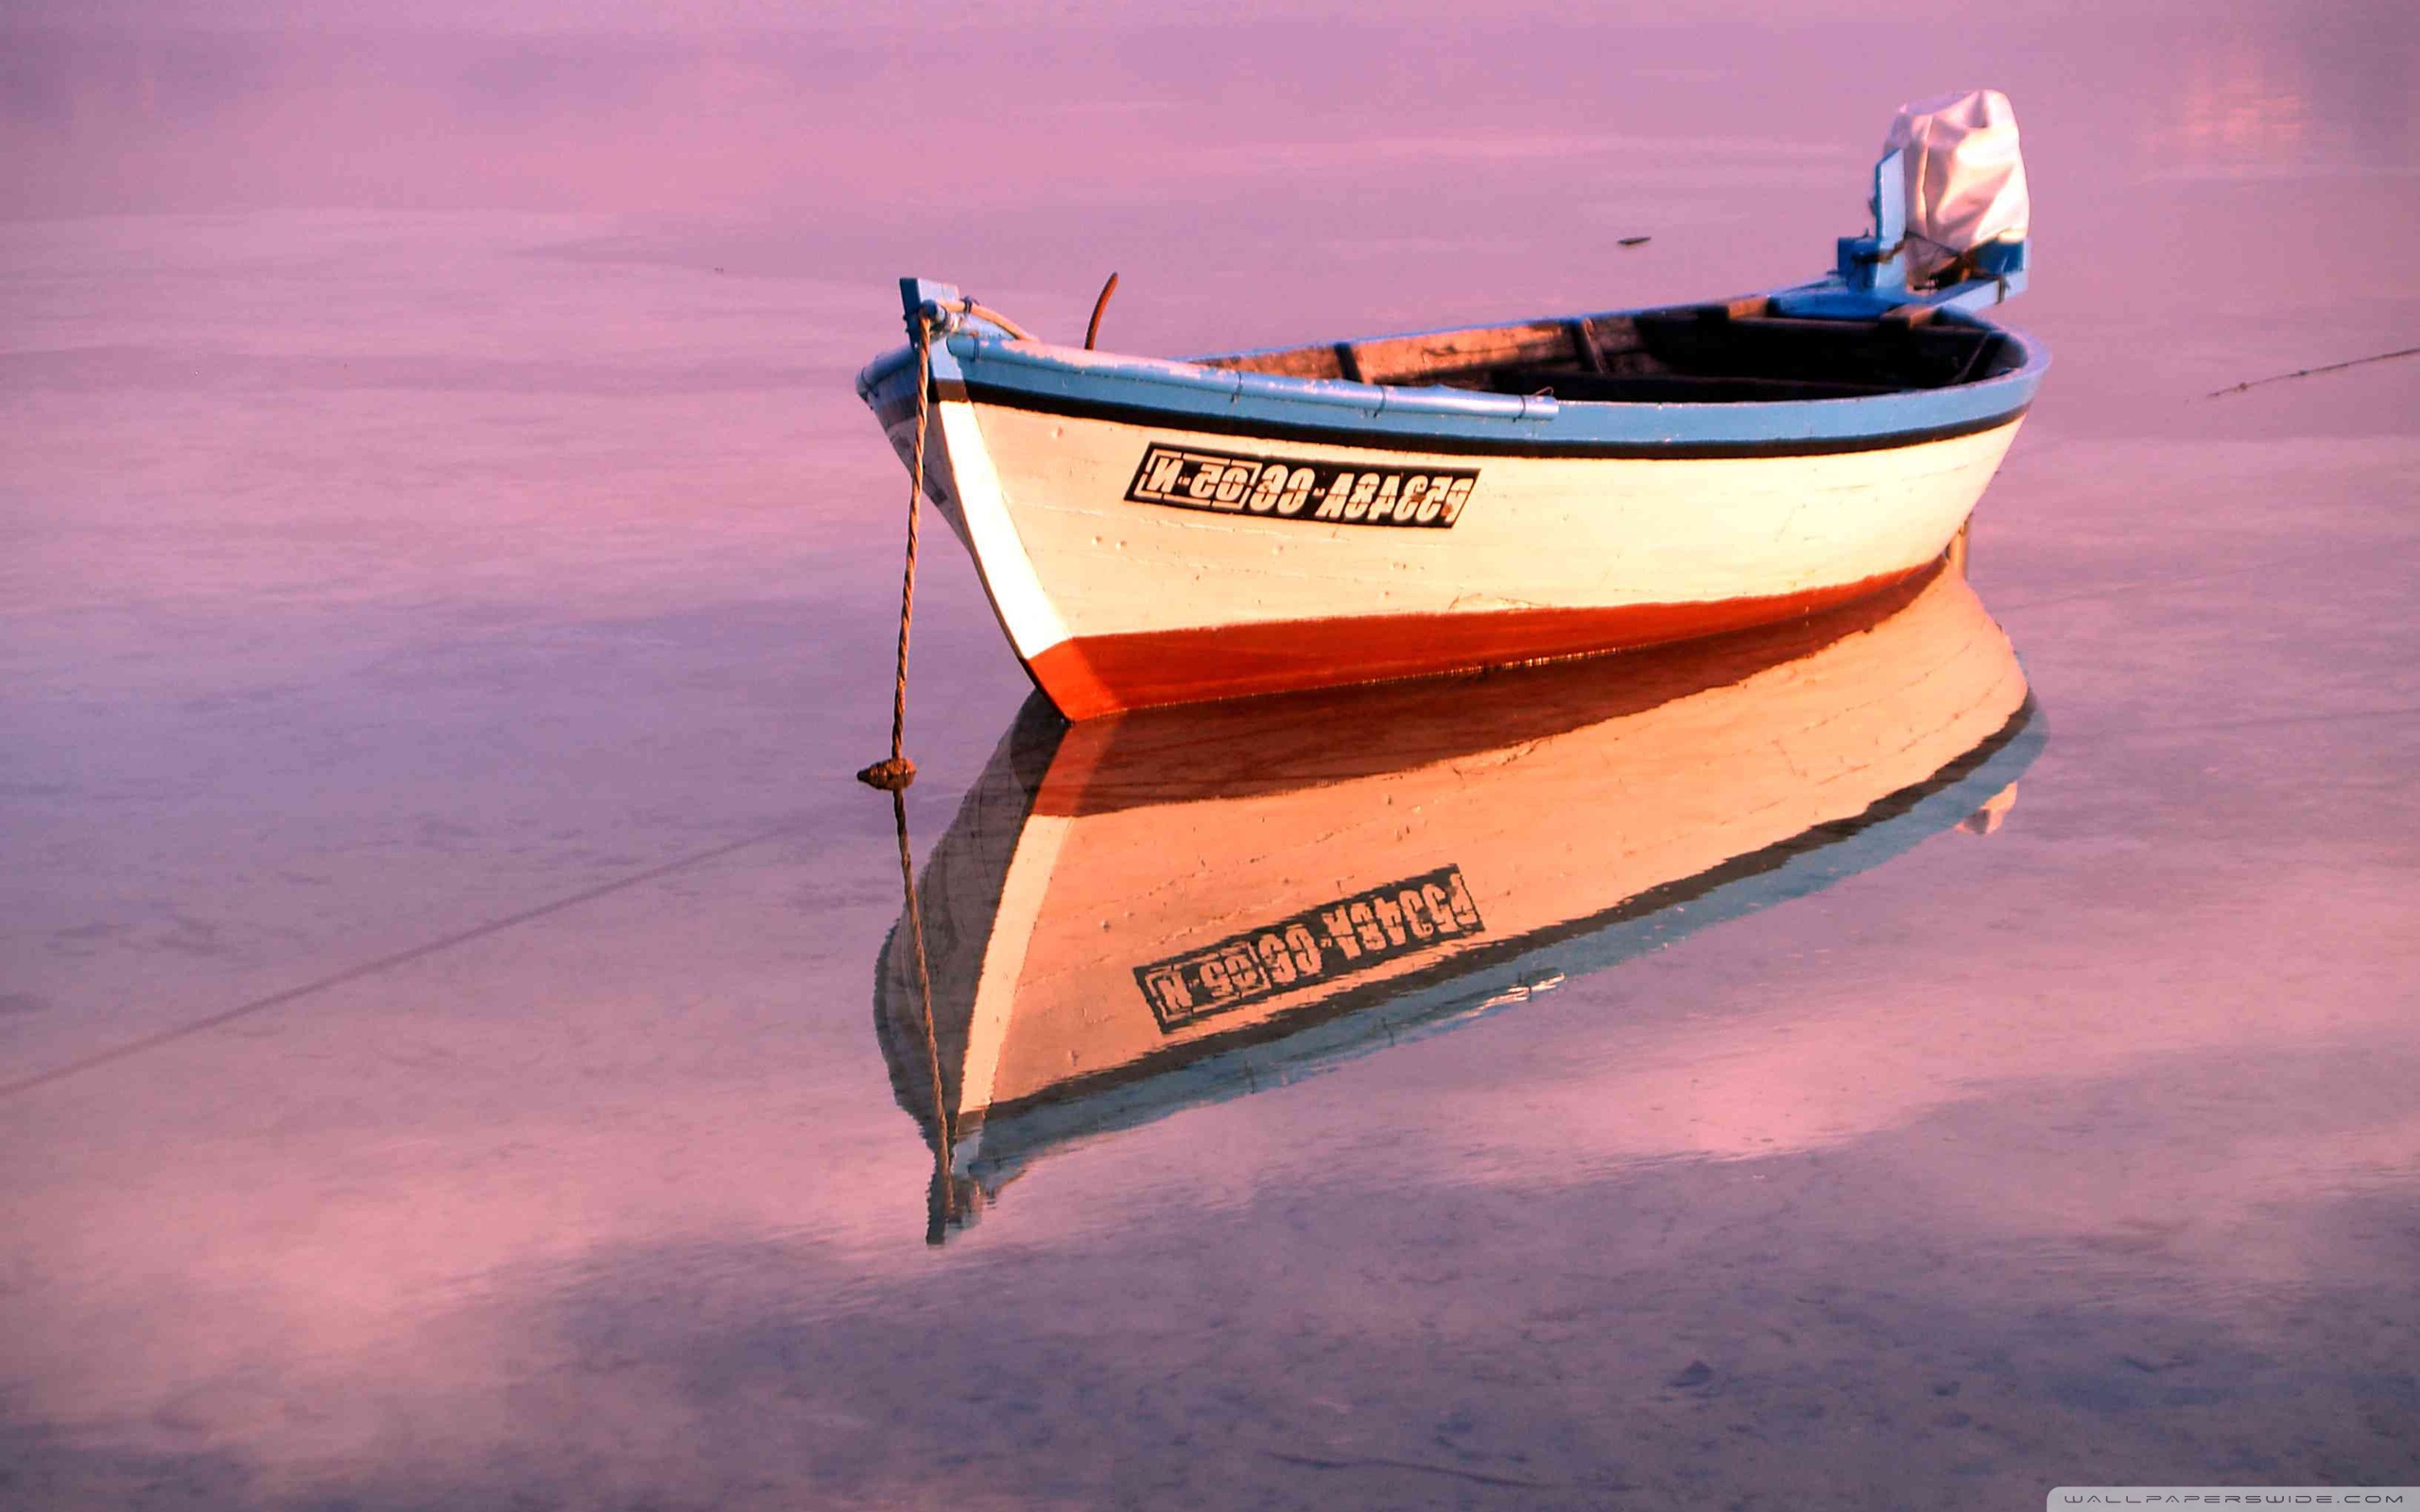 Есть слова лодка. Лодка на озере. Название лодок. Отражение в воде название лодки. Лодка на воде.